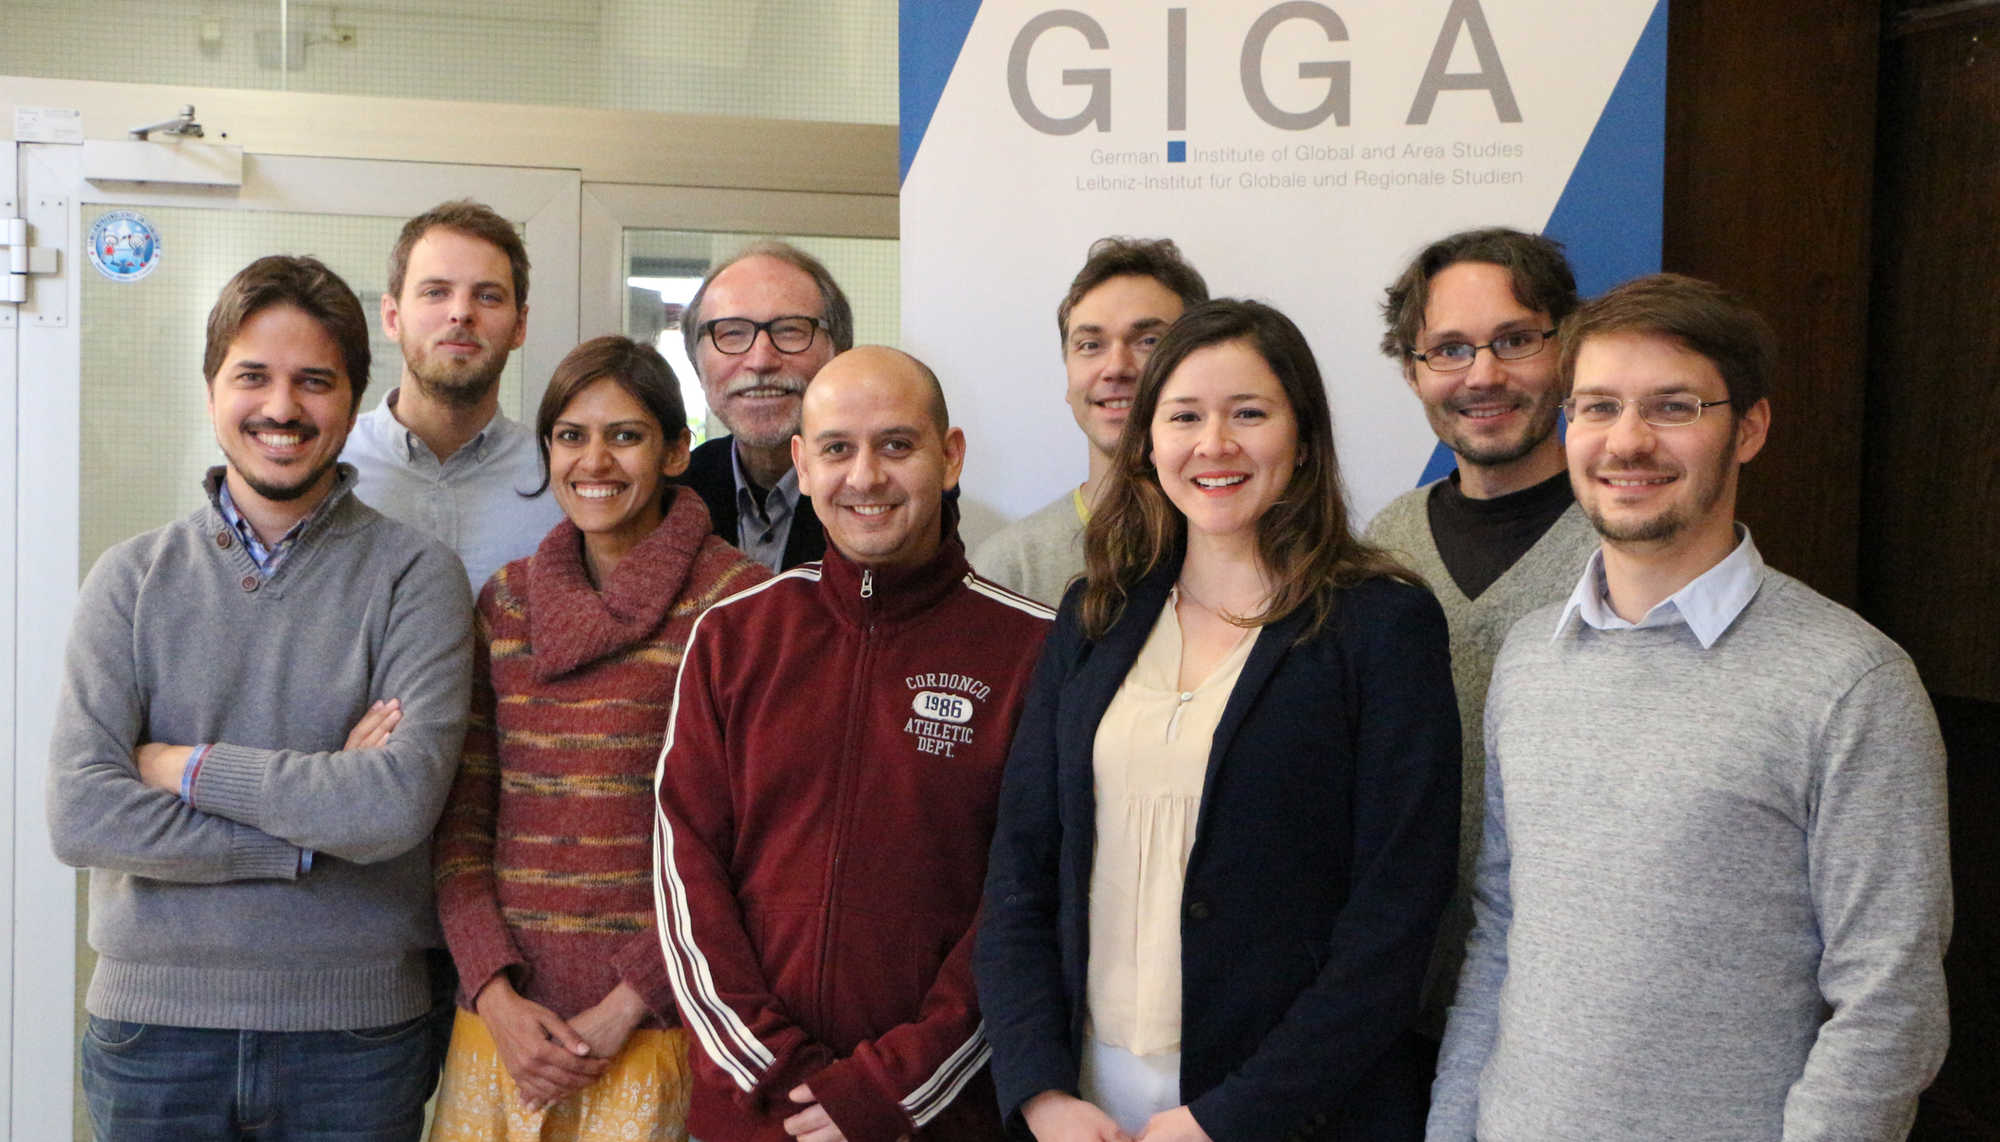 GIGA bei ISA 2017: Forschung und Vernetzung in Baltimore